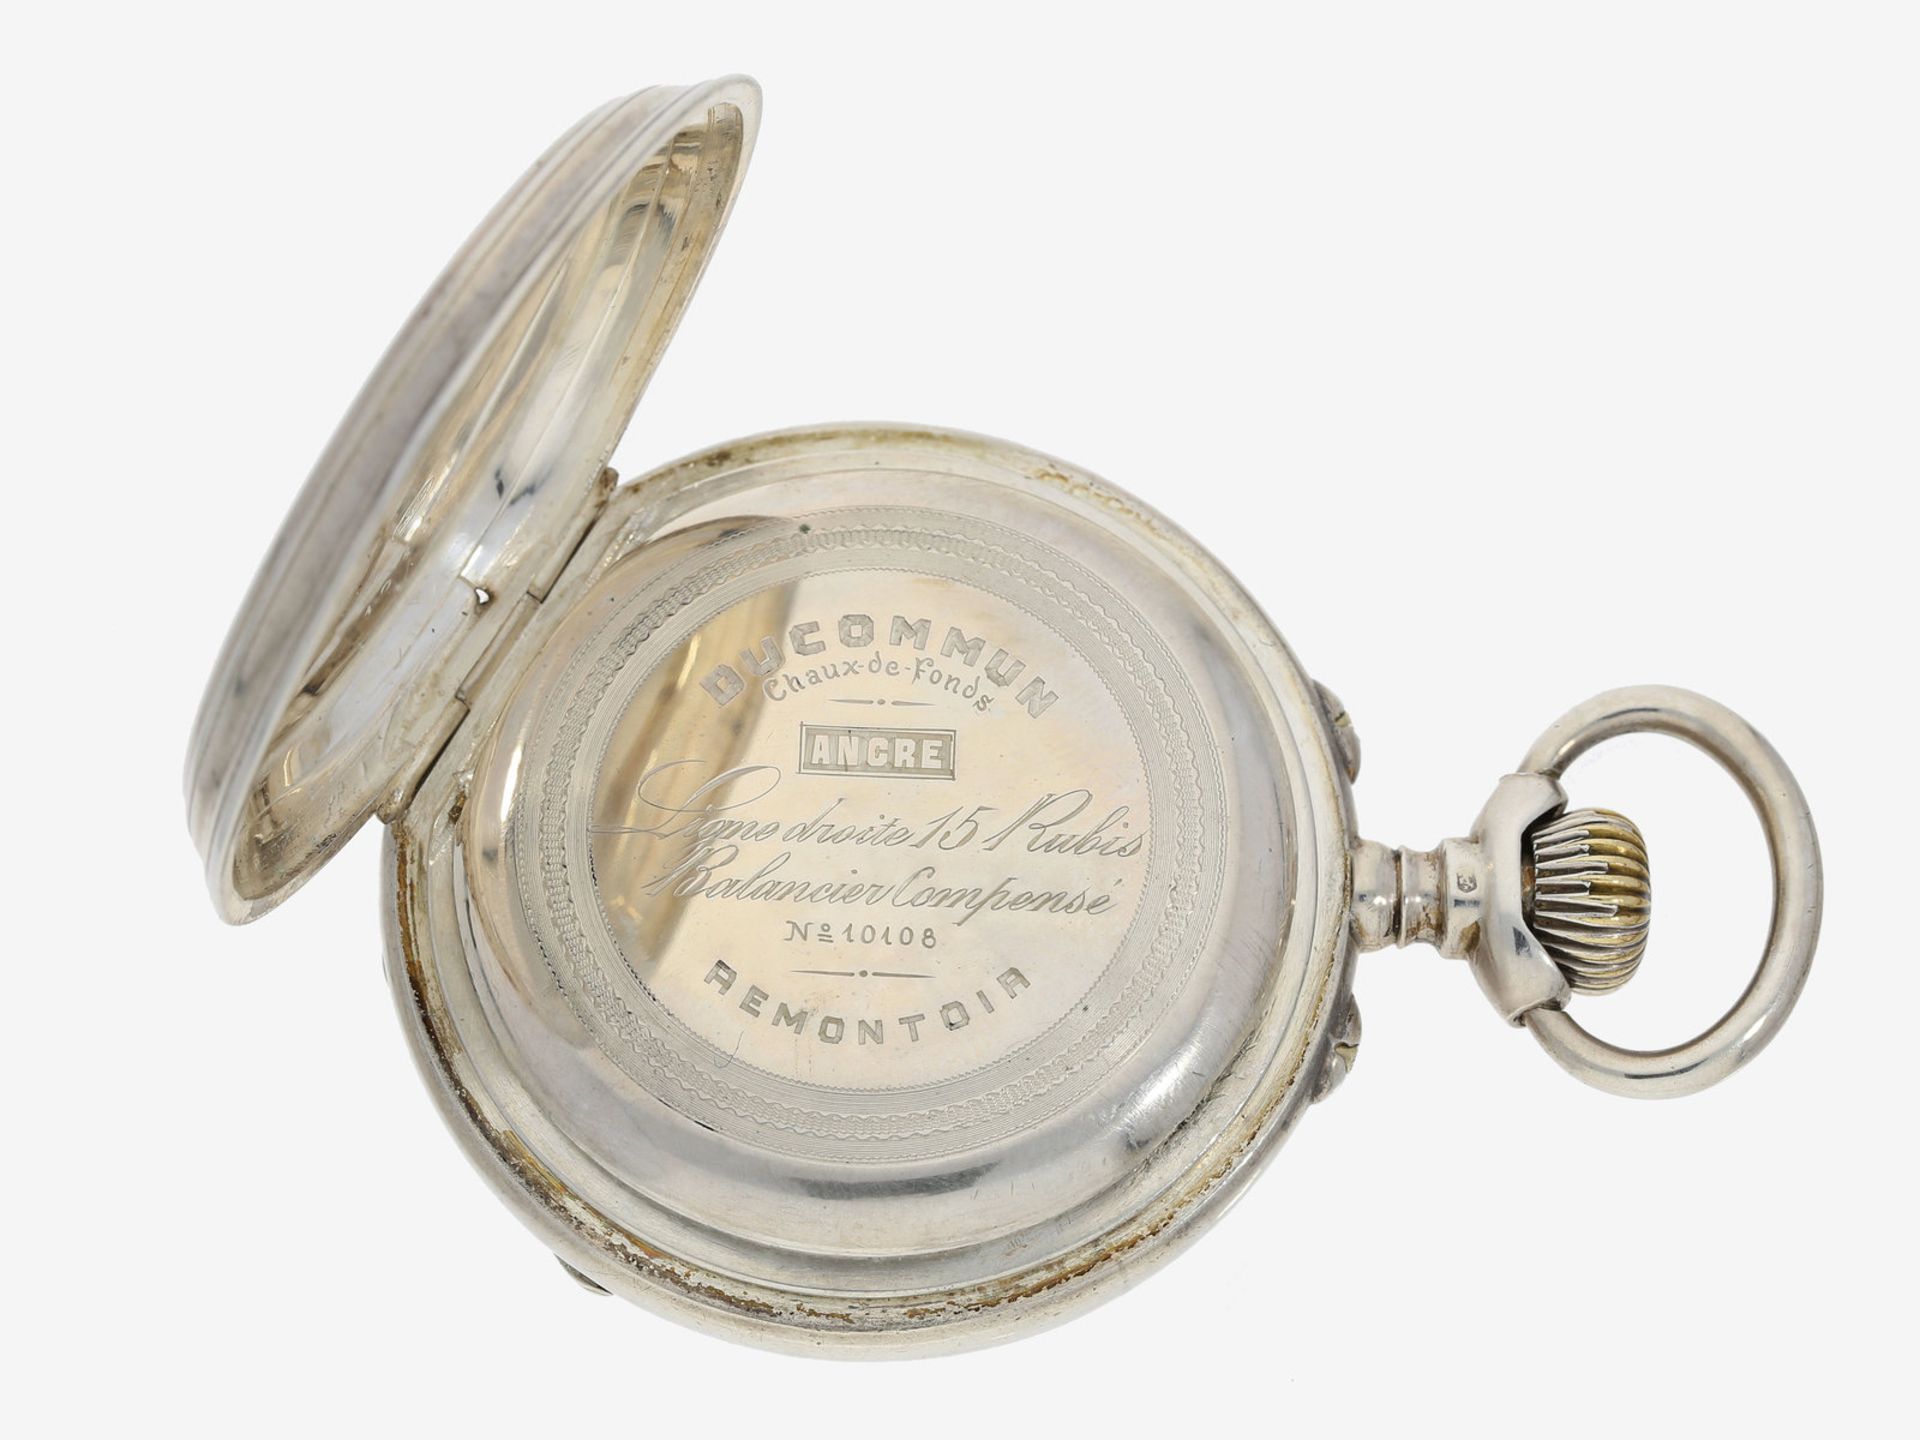 Taschenuhr: technisch interessante, sehr seltene Kalender-Uhr mit deutscher Tagesanzeige in der - Image 3 of 4